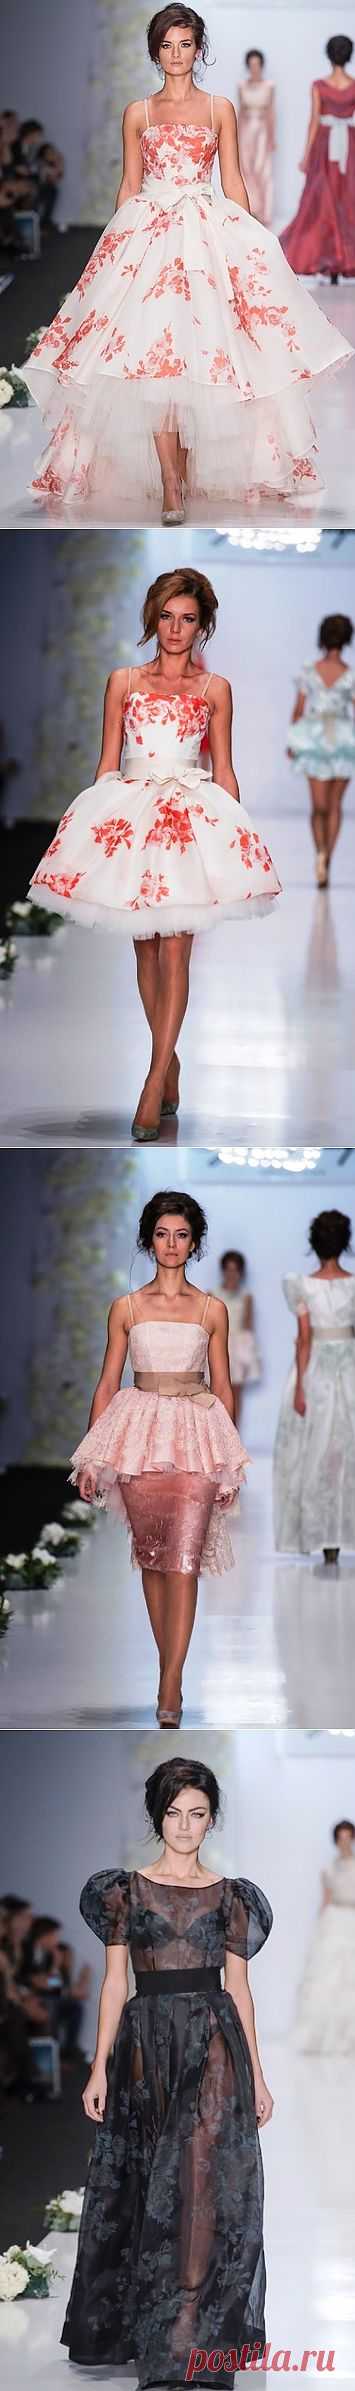 Самые красивые платья из новой коллекции Игоря Гуляева | Мода